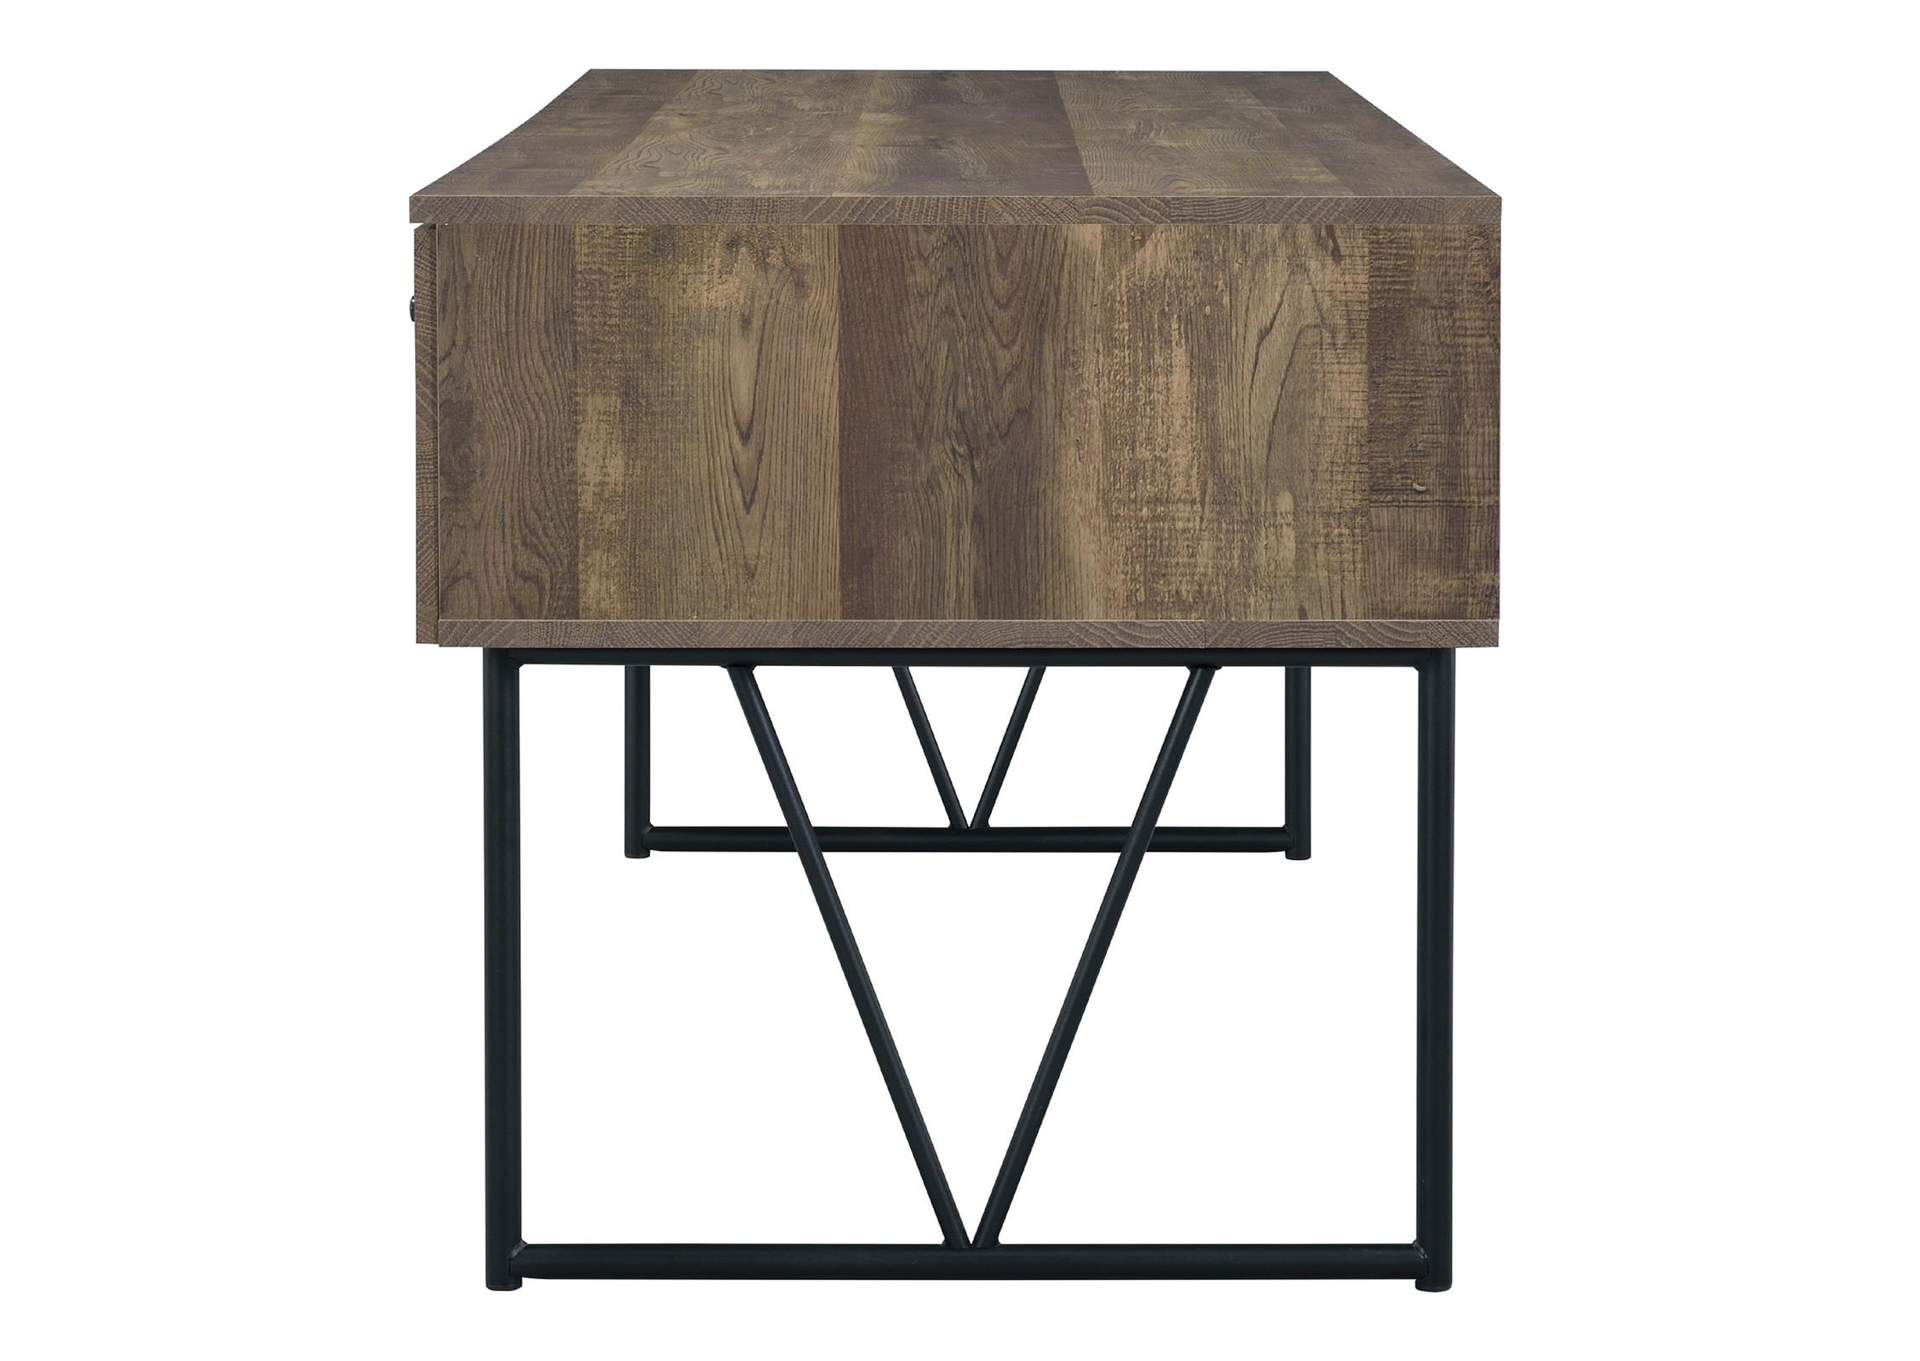 Analiese 4-drawer Writing Desk Rustic Oak,Coaster Furniture